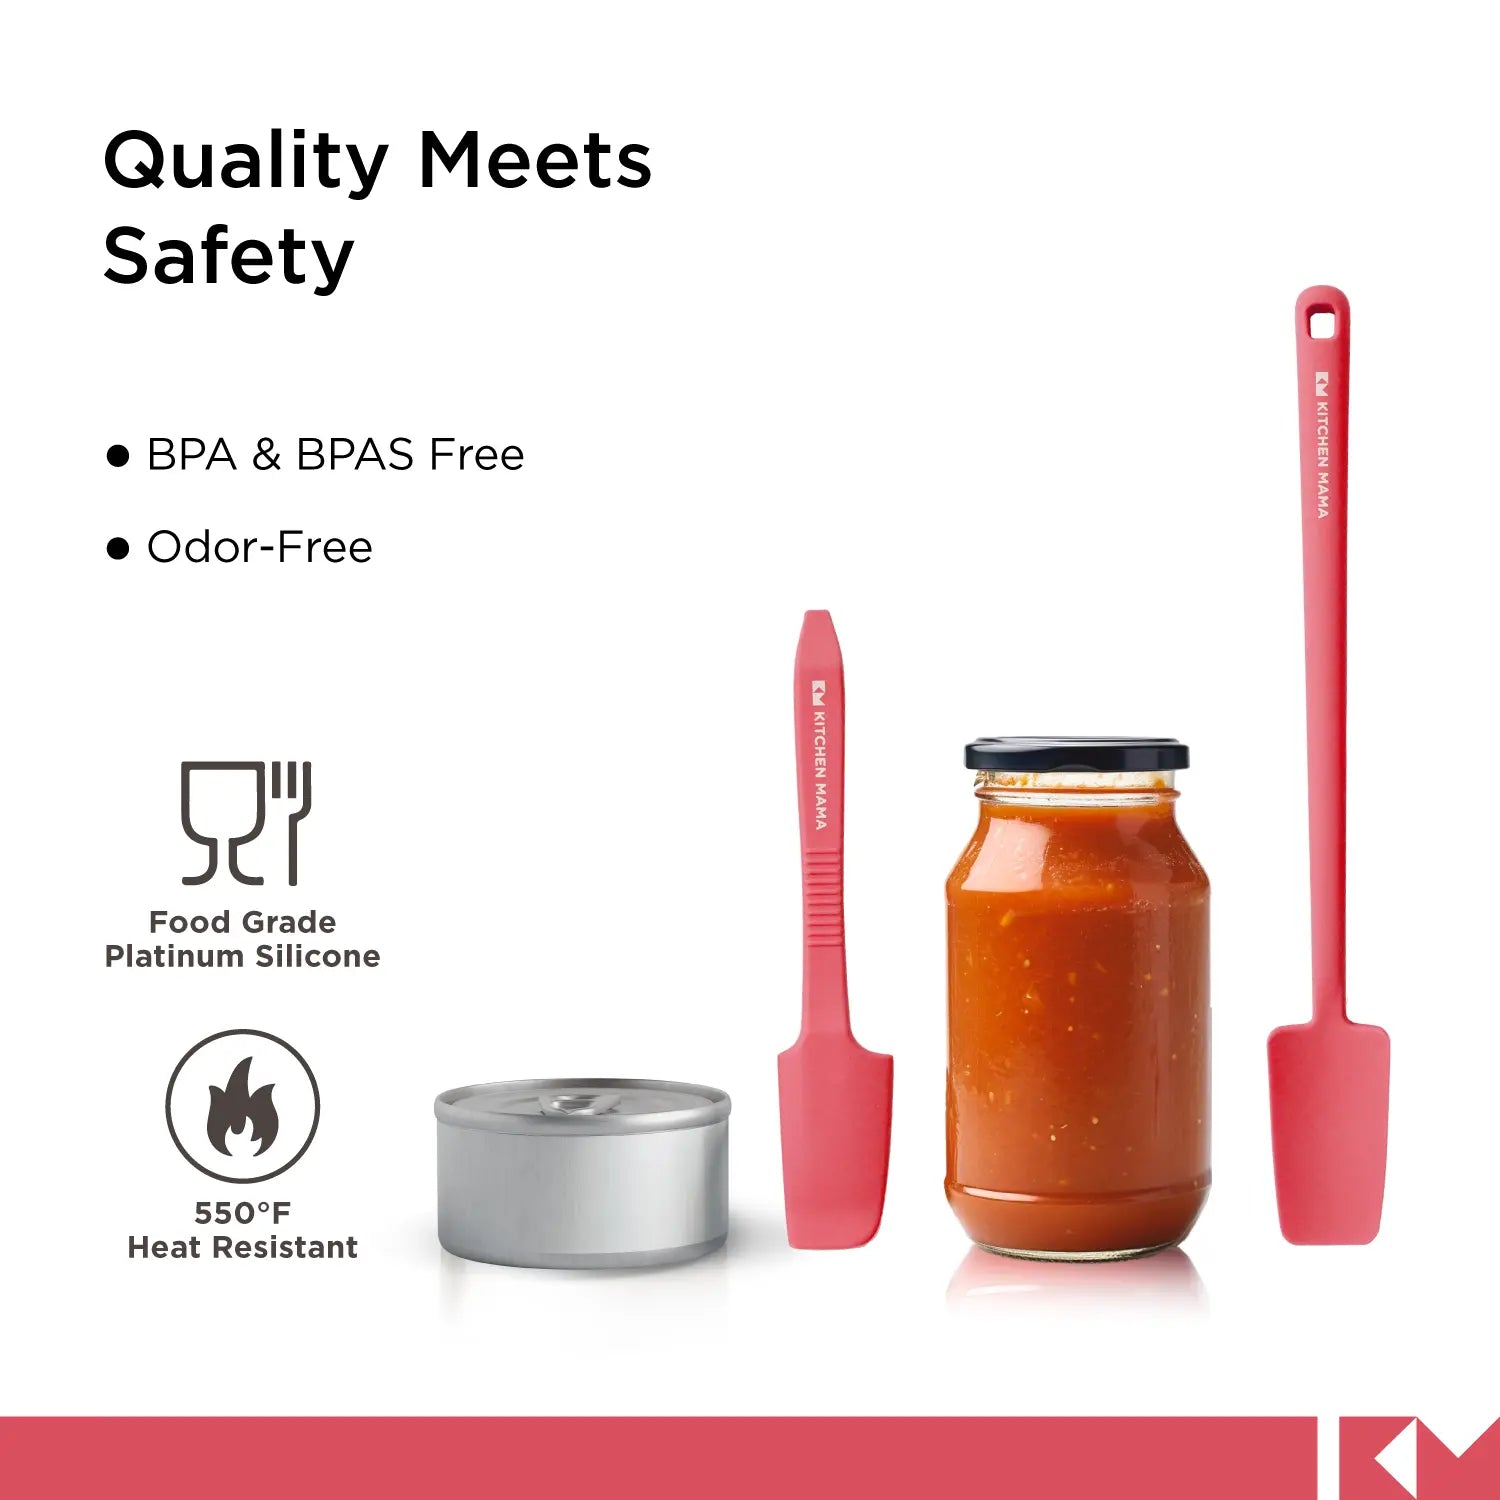 Silikonspatel für Gläser und Dosen, SP0420-R, rot, Qualität trifft Sicherheit, BPA- und BPAS-frei, geruchsfrei, lebensmittelechtes Platinsilikon